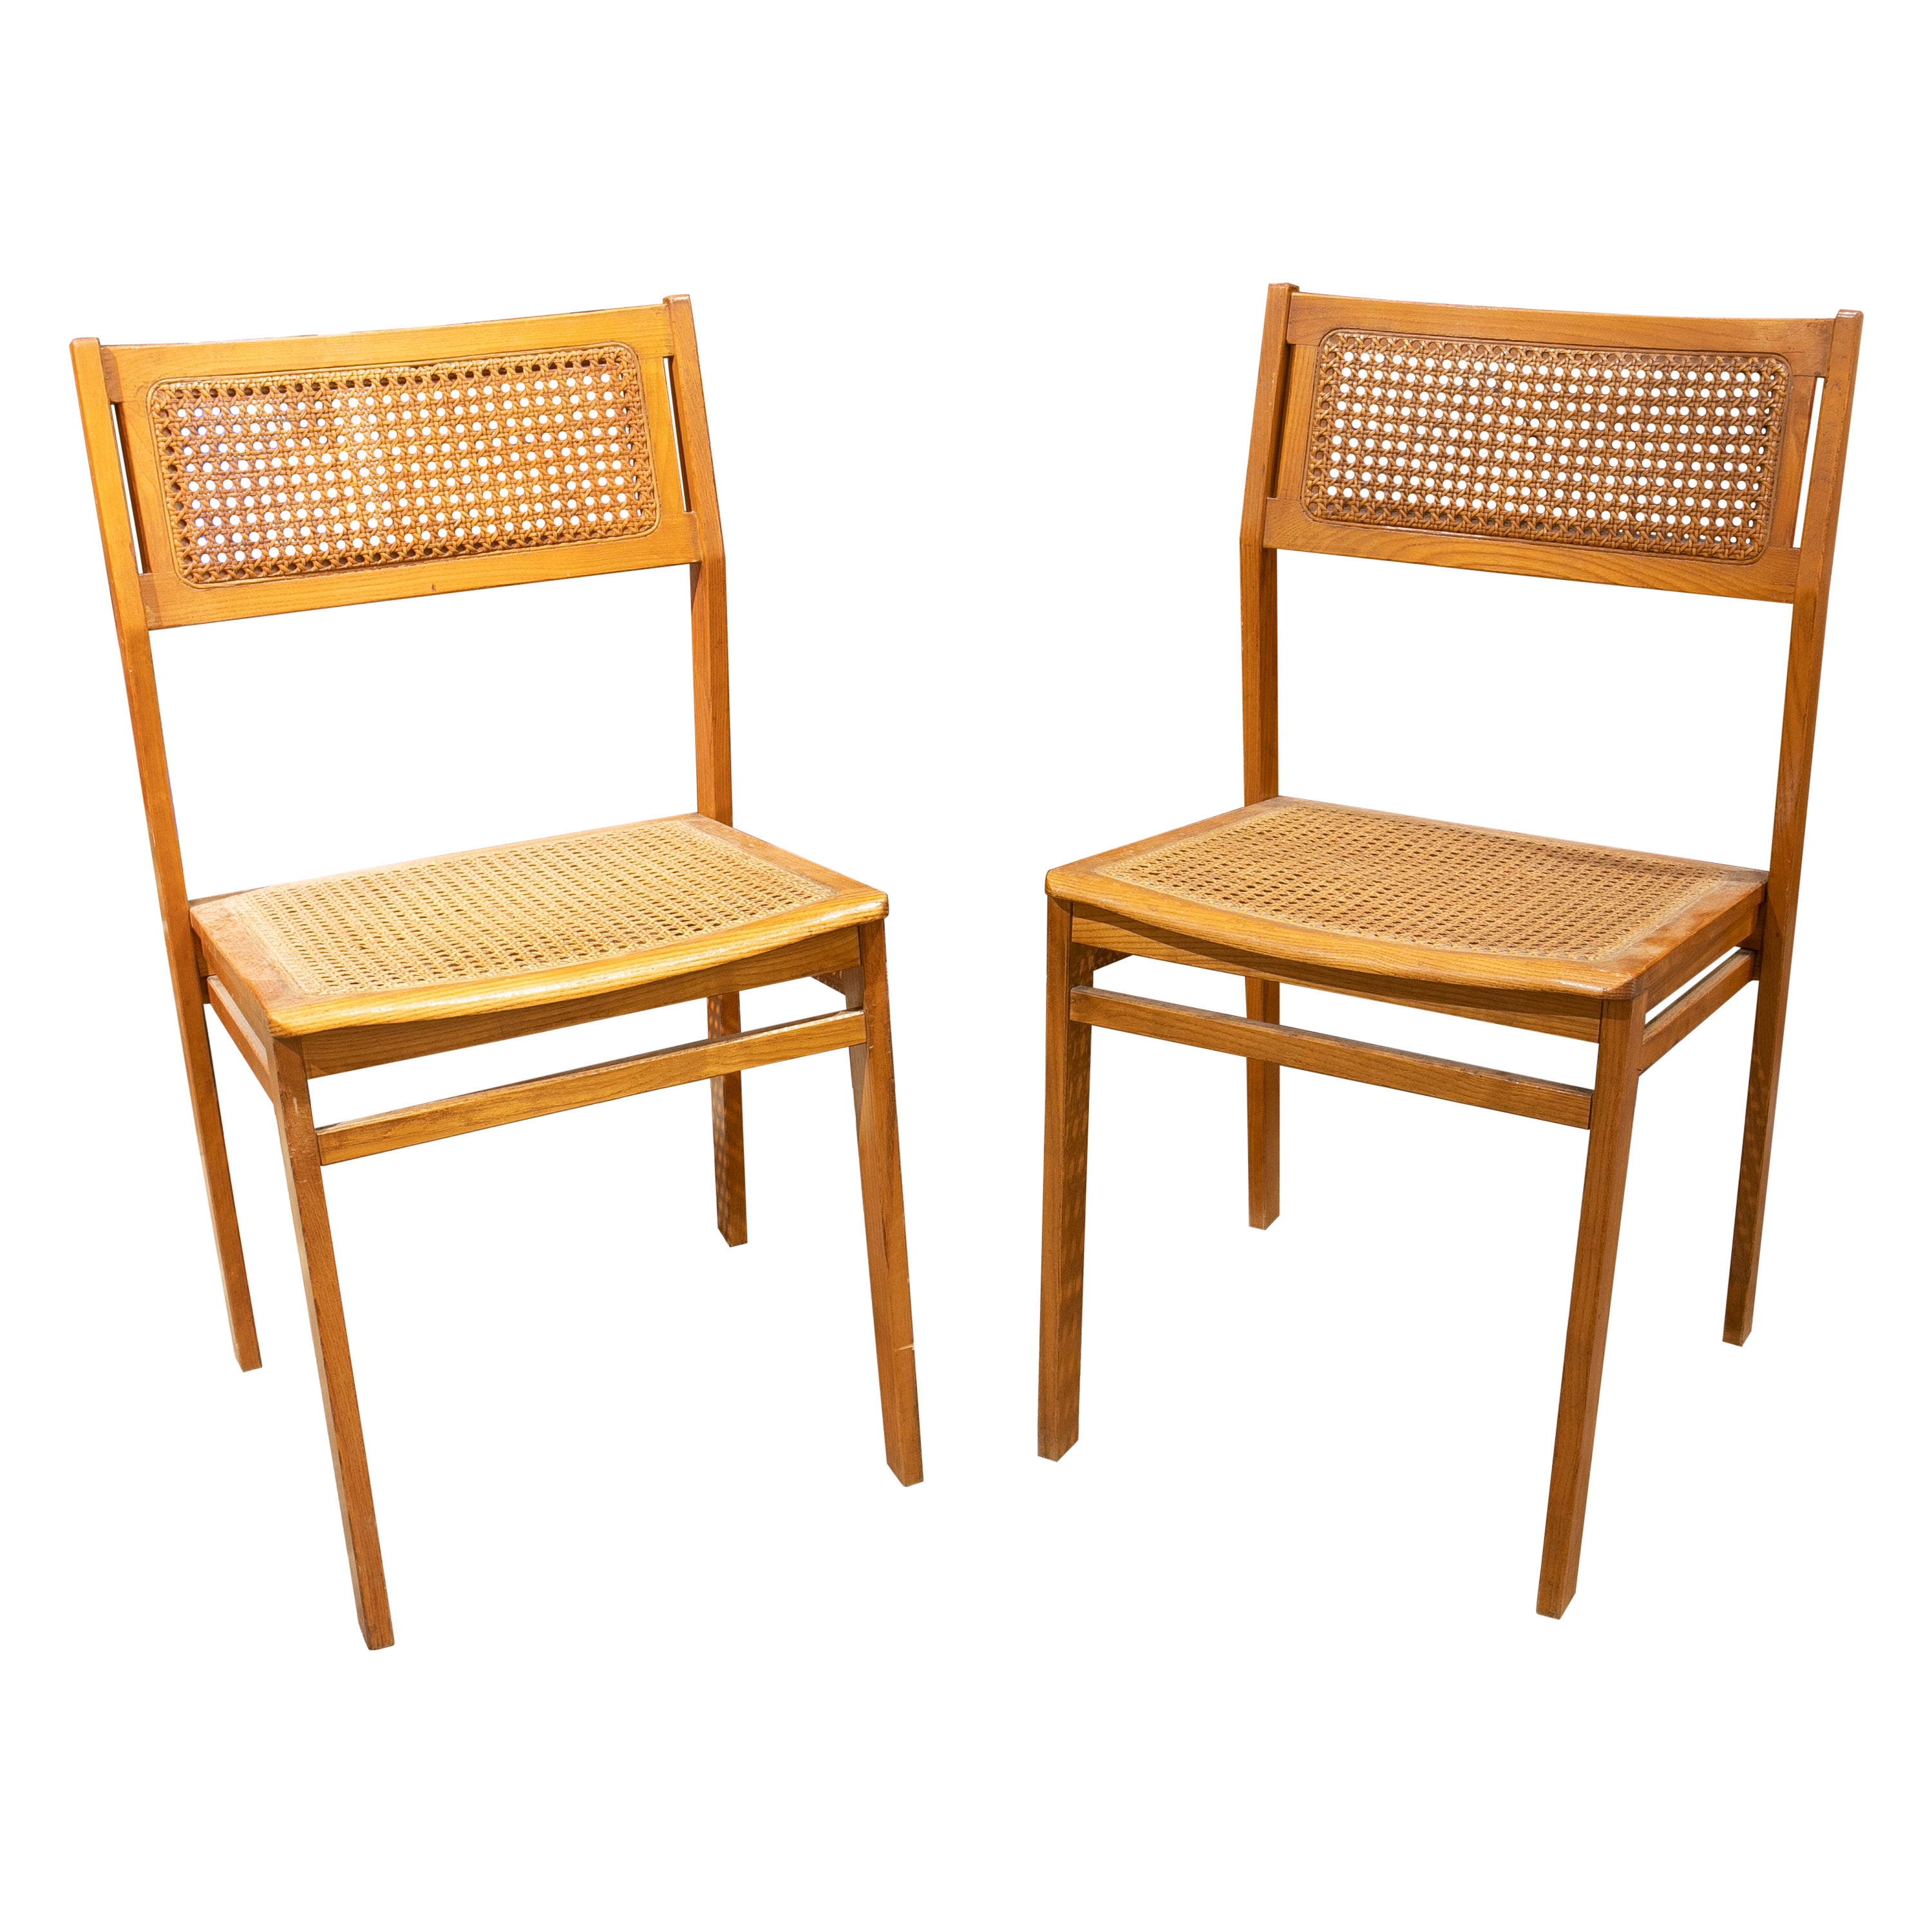 Paire de chaises suédoises en bois des années 1970 avec assise et dossier en osier